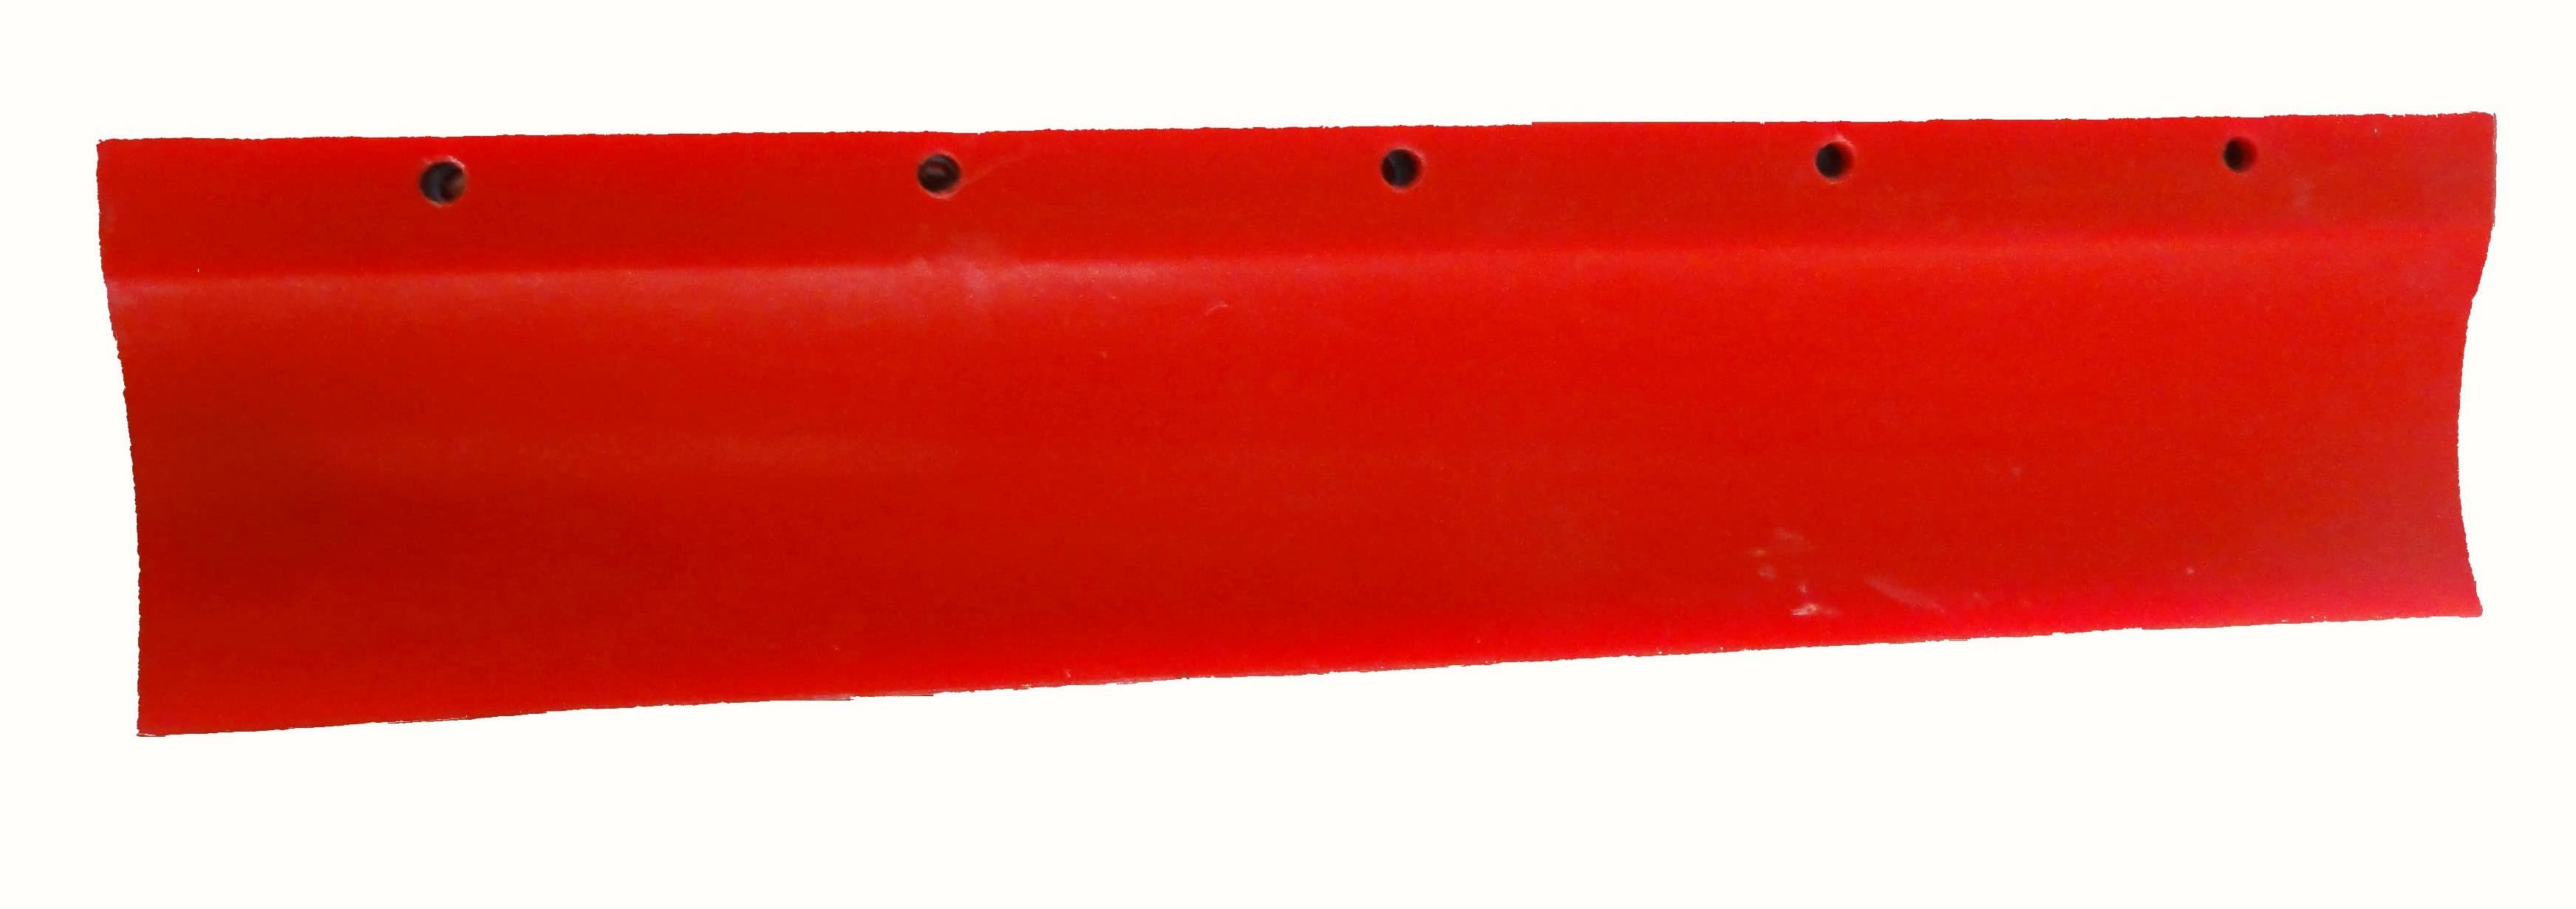 Conveyor Belt Scraper Blade